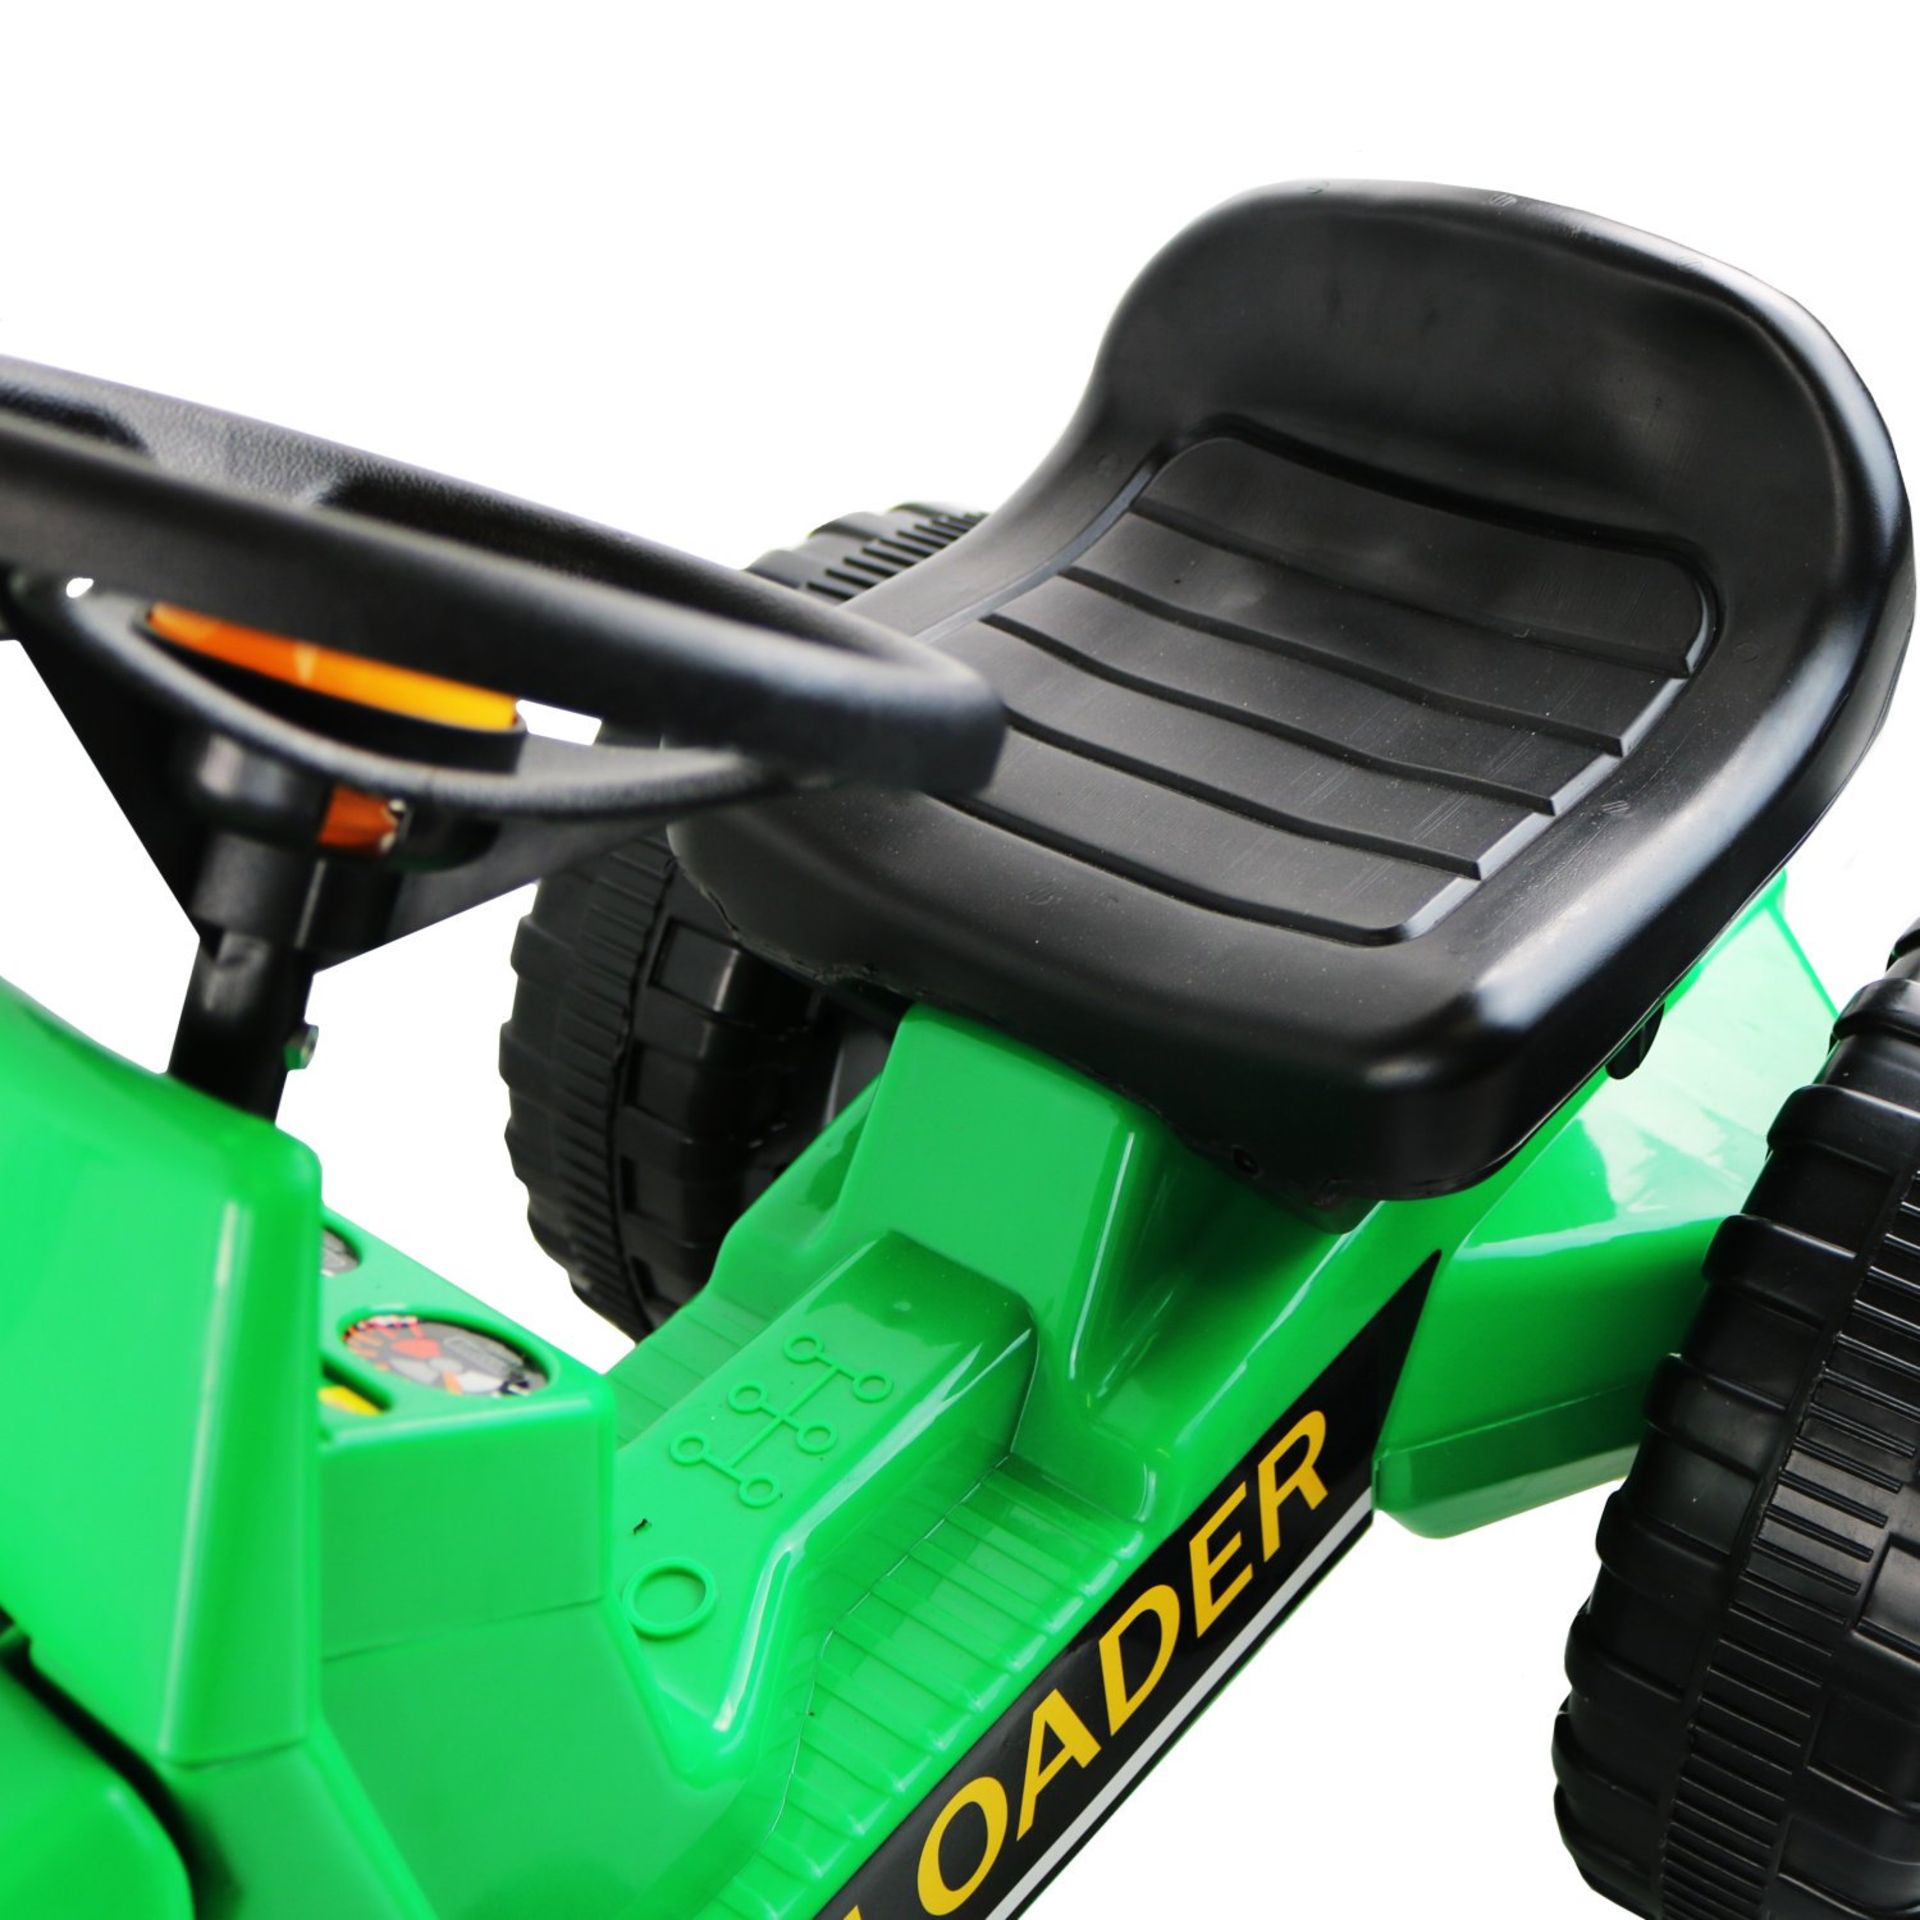 (RU302) Childrens Pedal Ride on Green Super Loader Tractor Our Childrens Pedal Ride on Green... - Image 2 of 2